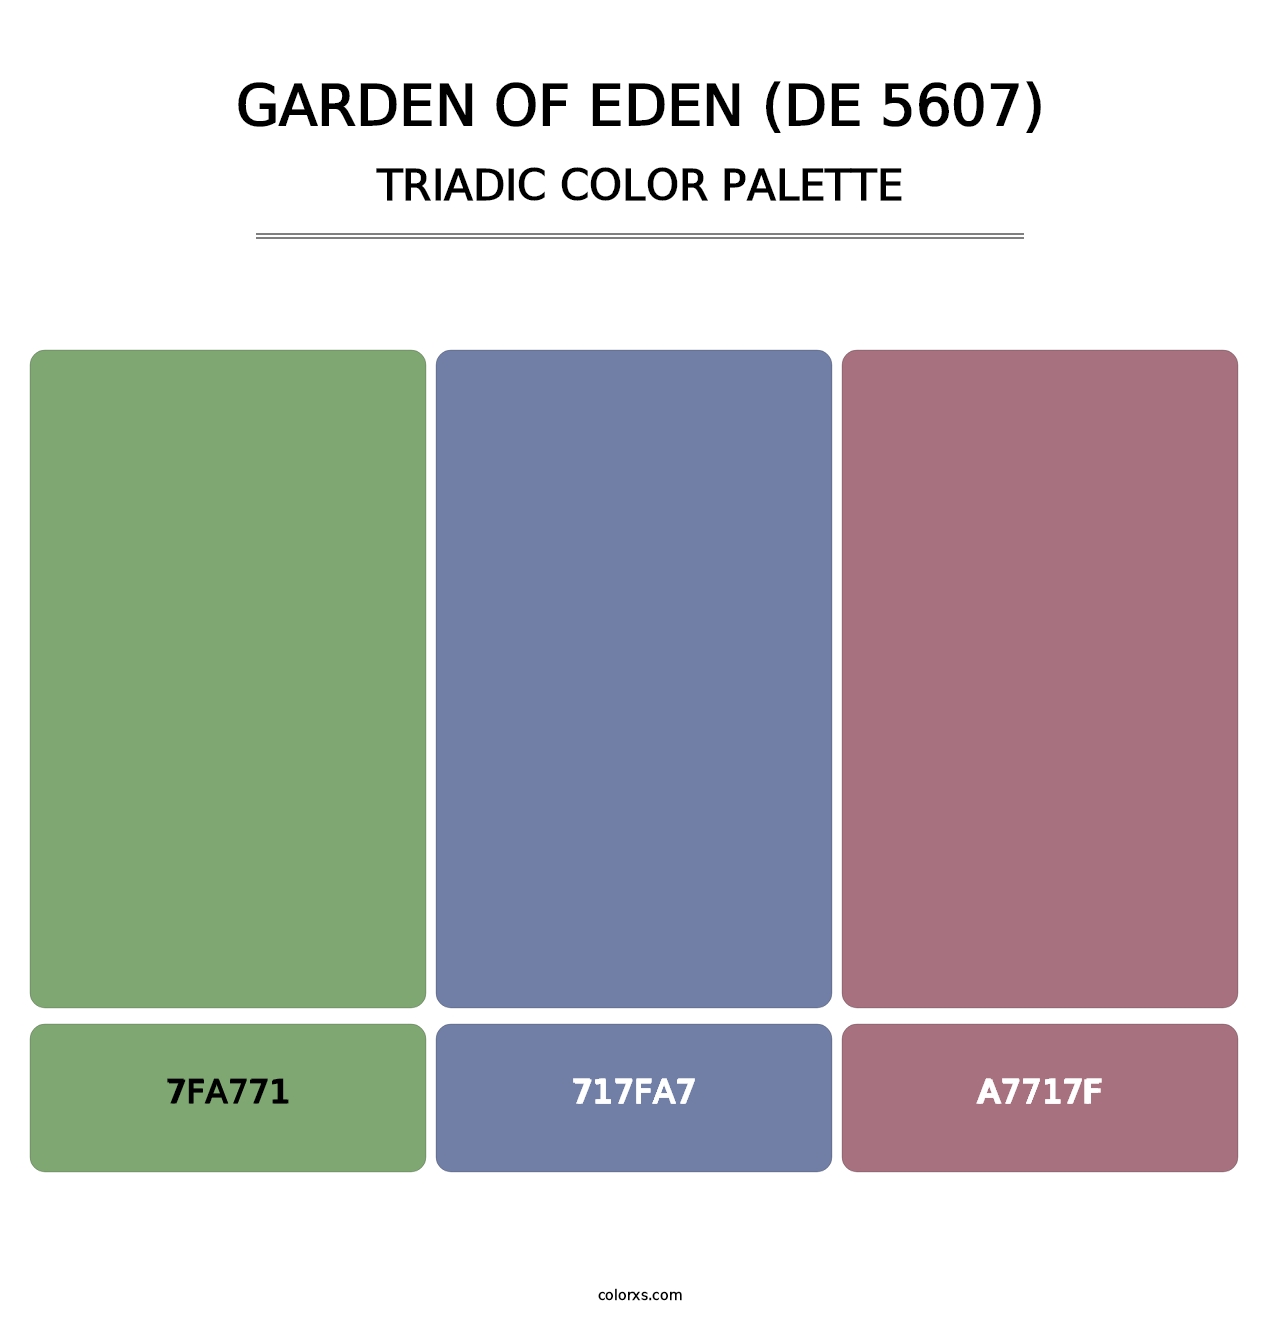 Garden of Eden (DE 5607) - Triadic Color Palette